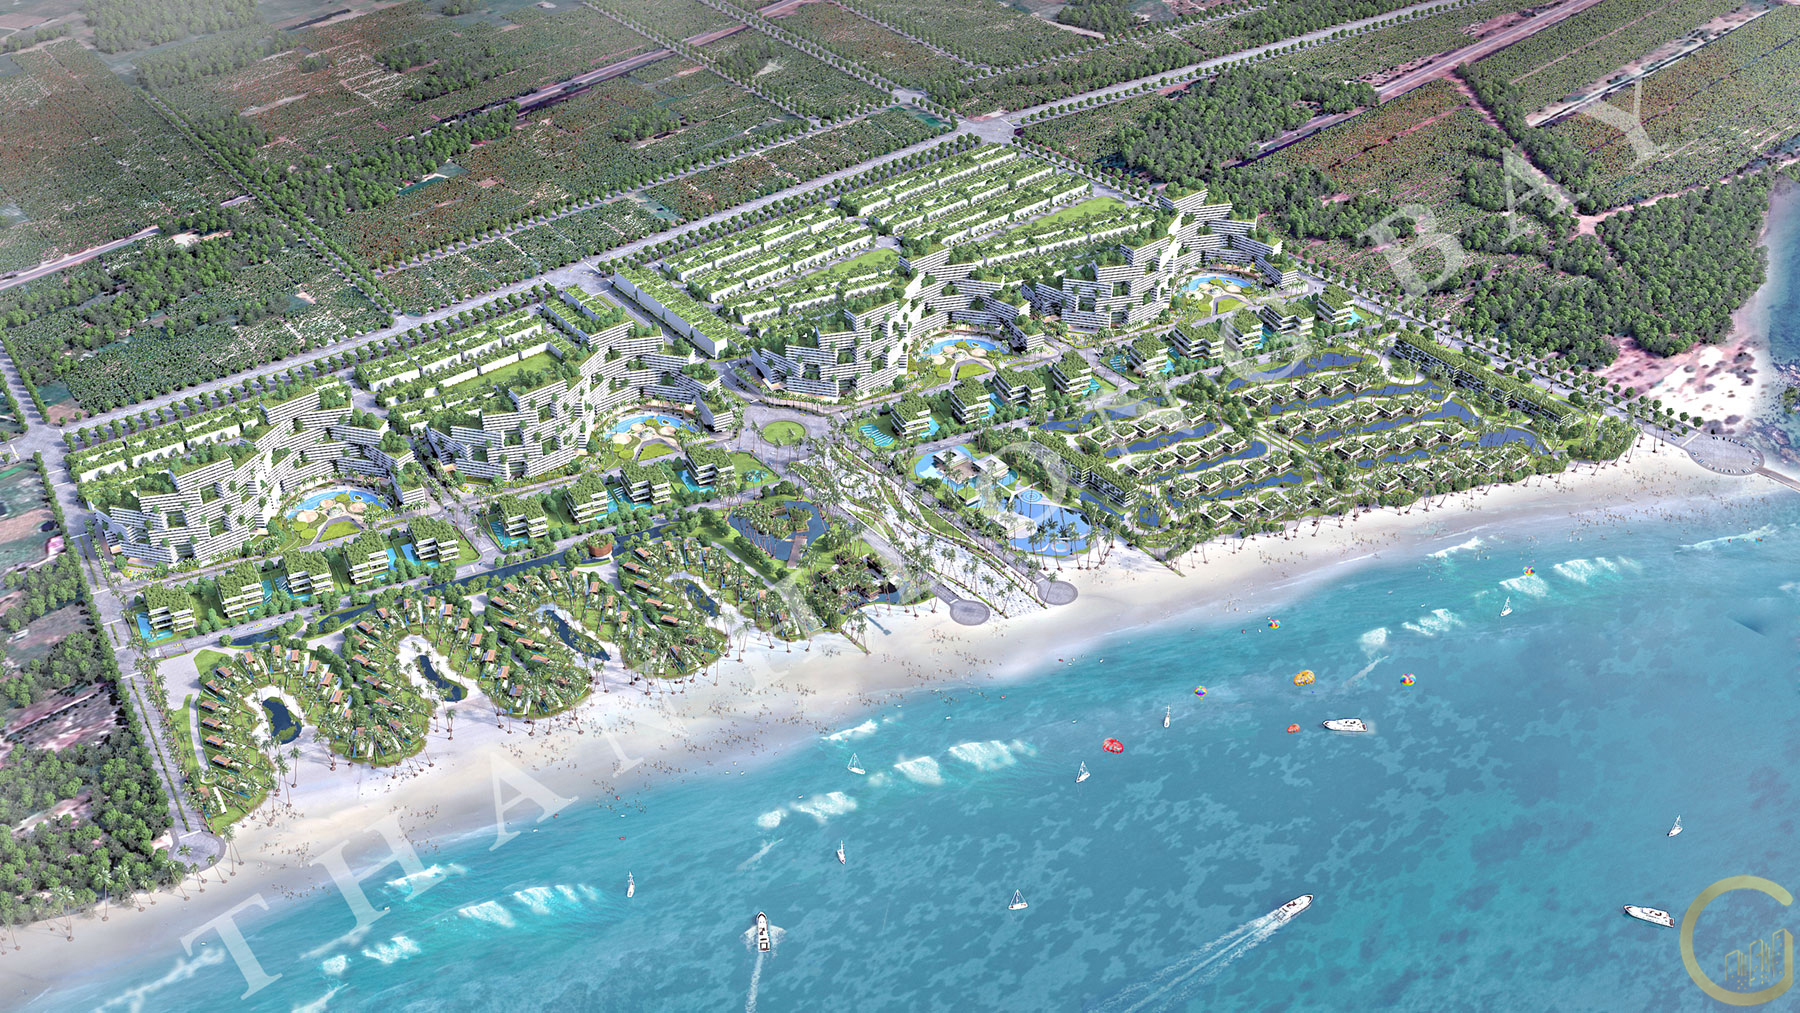 Dự án Thanh Long Bay - Quần thể nghỉ dưỡng & trung tâm thể thao biển quốc tế, được phát triển bởi Tập đoàn Nam Group.